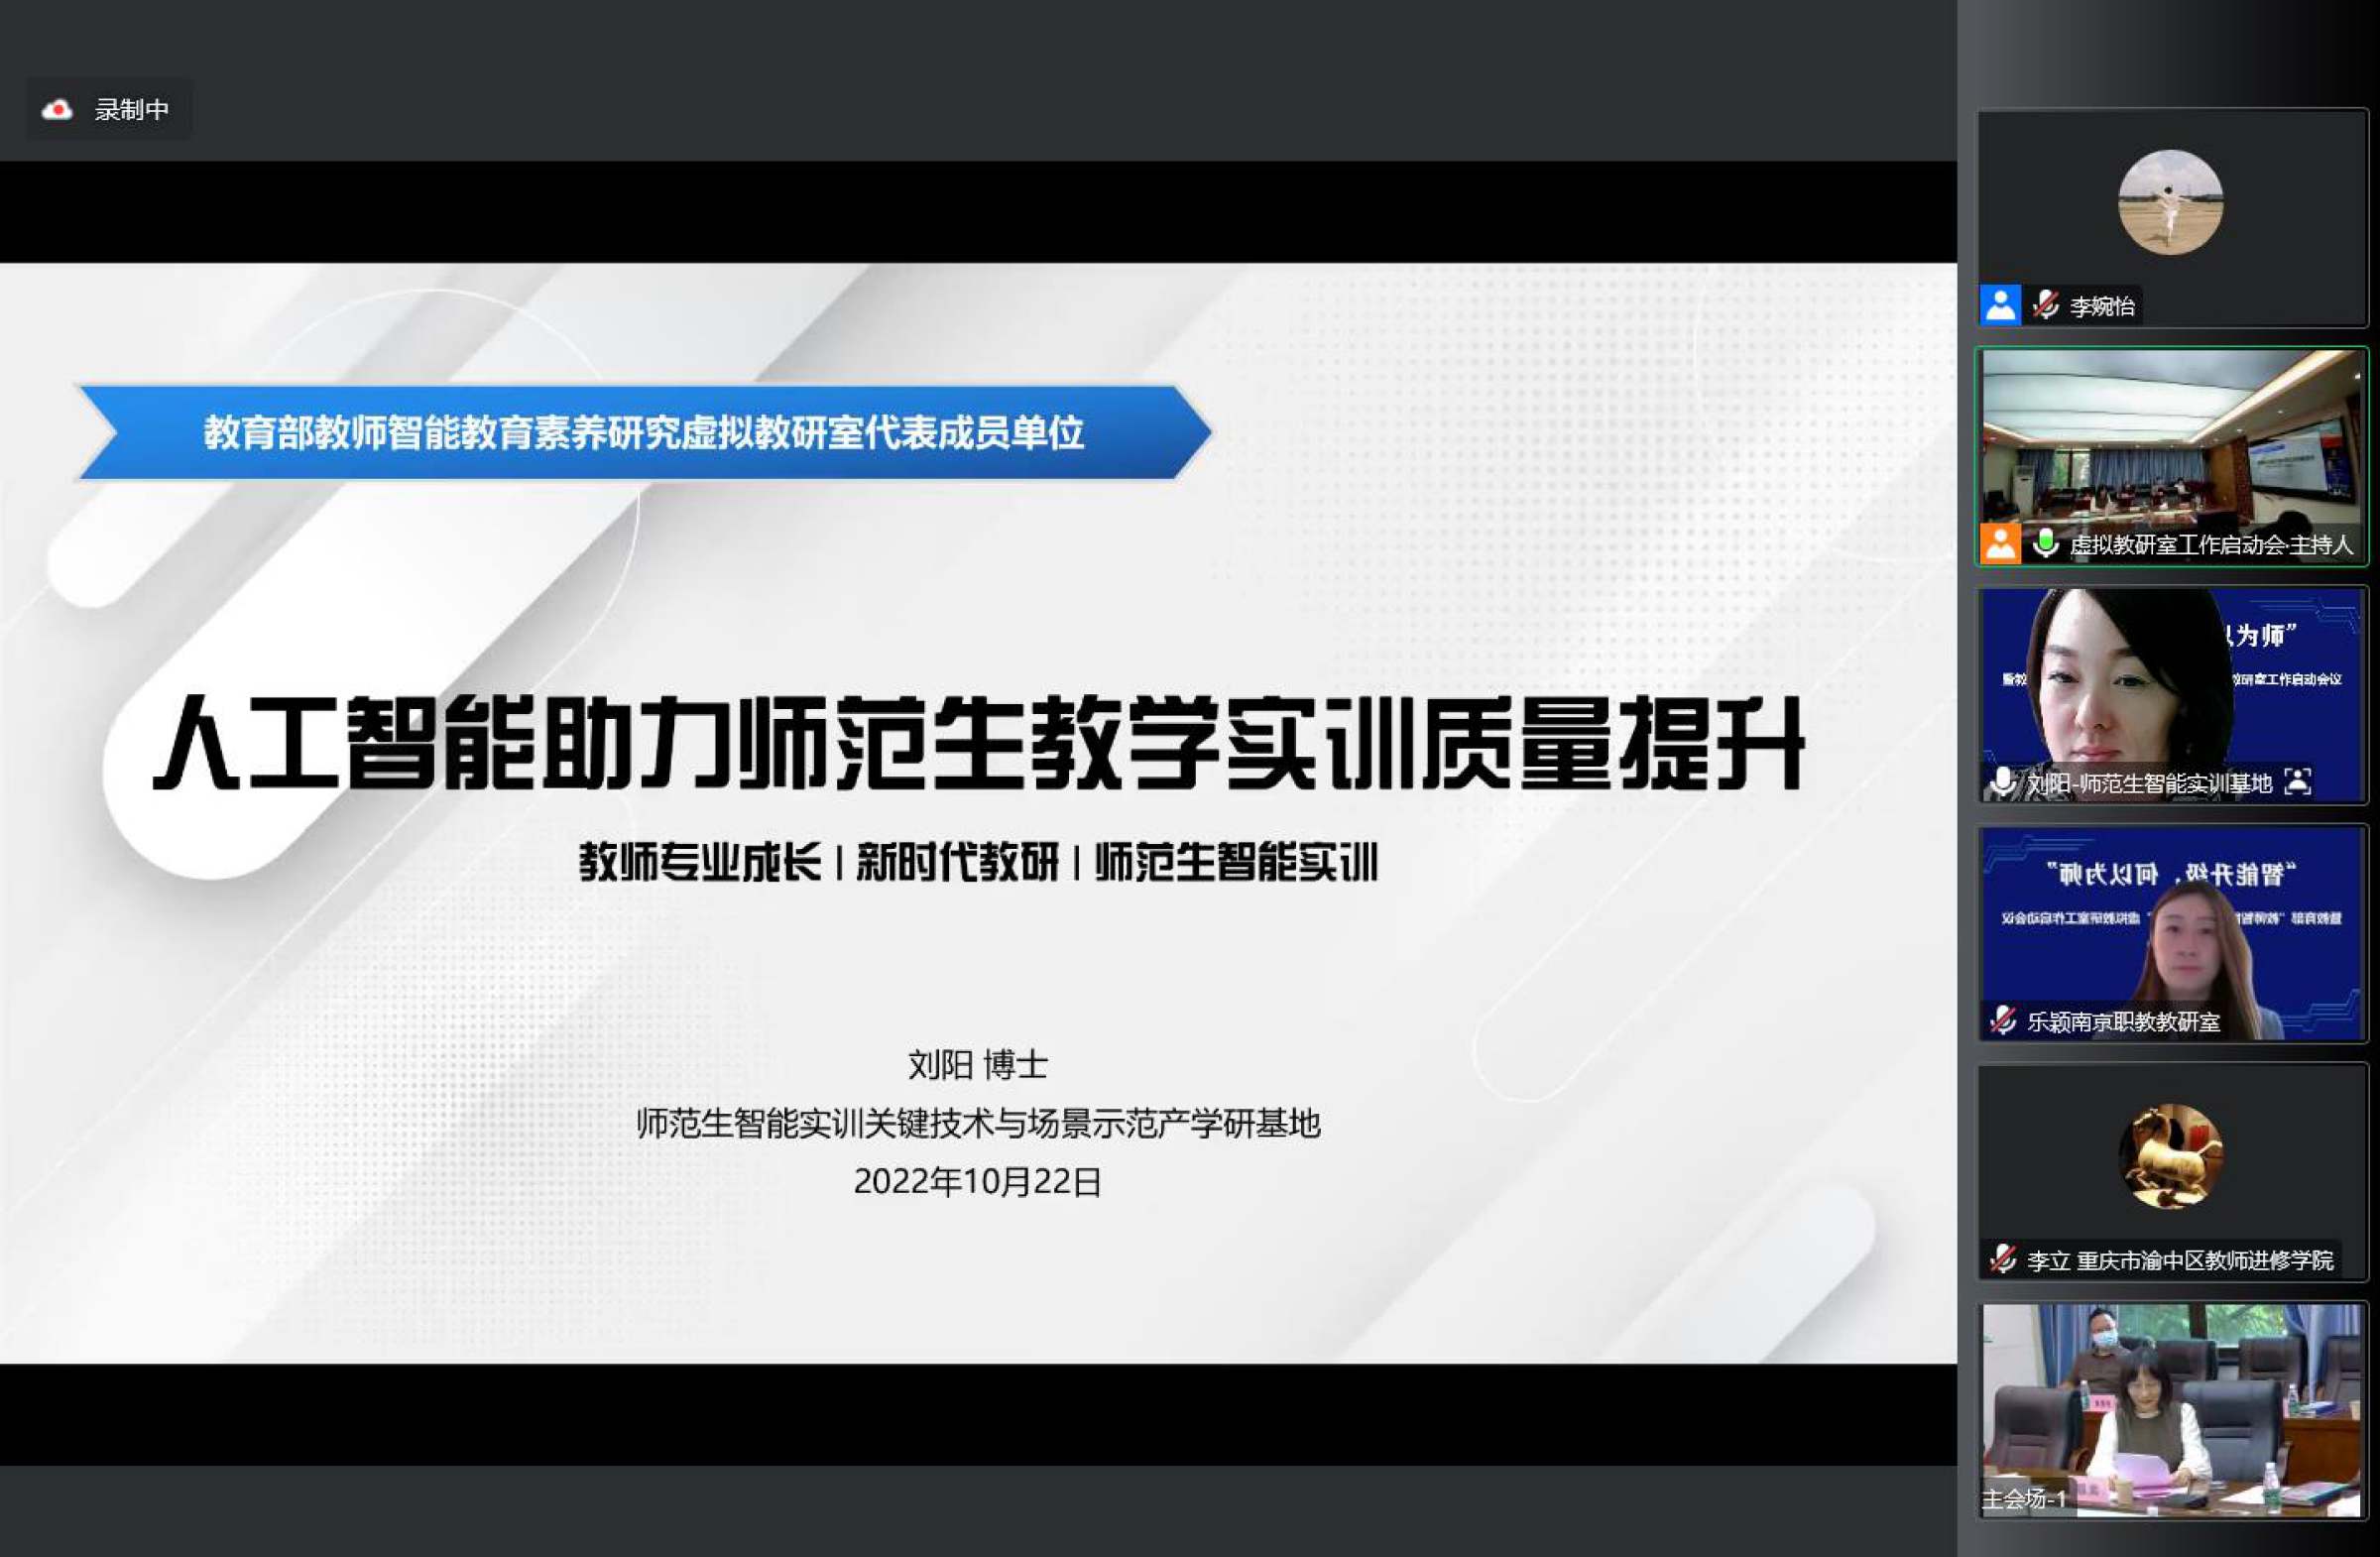 14.刘阳博士作题为《人工智能助力师范生教学实训质量提升》 的分享报告